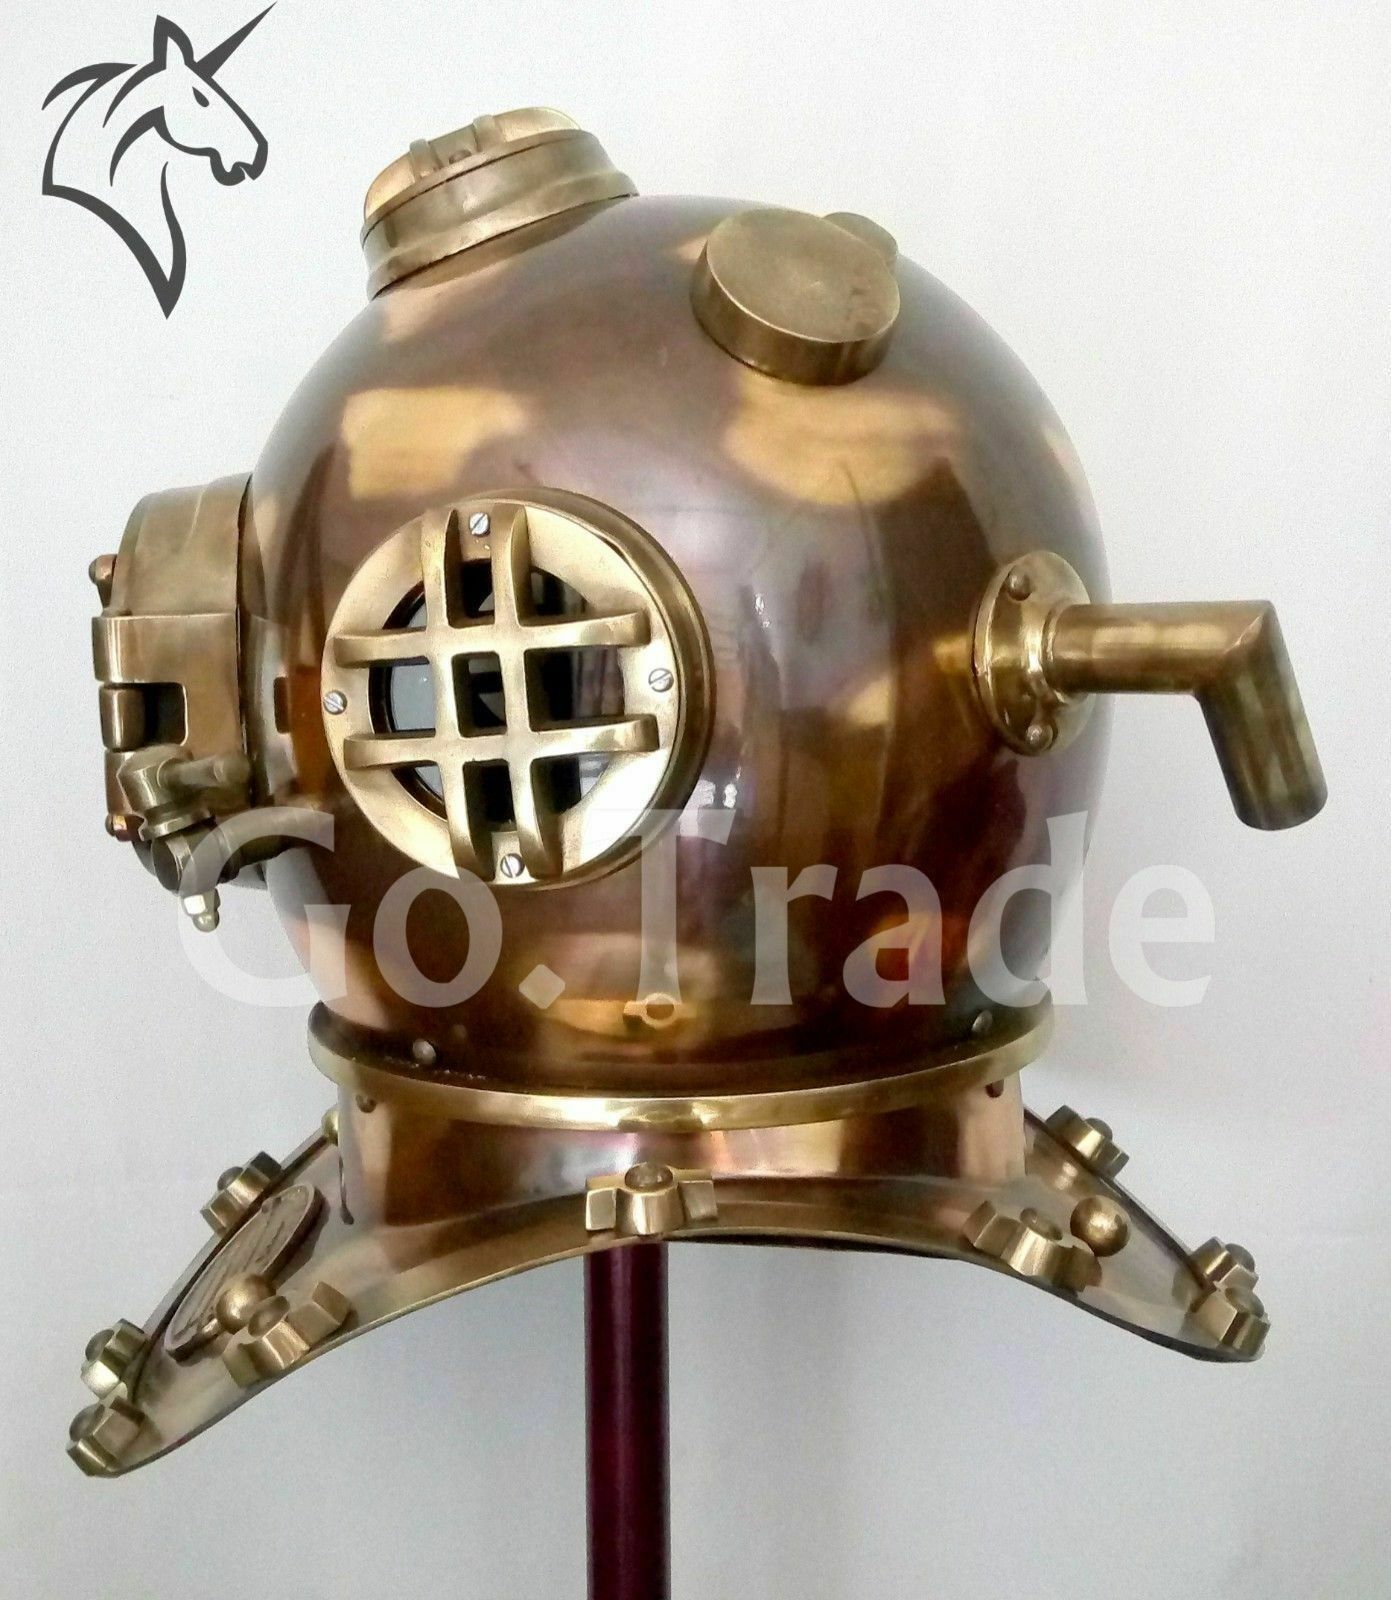 Us Navy Mark V Antique Diving Divers Helmet Brass Steel Full Size Maritime